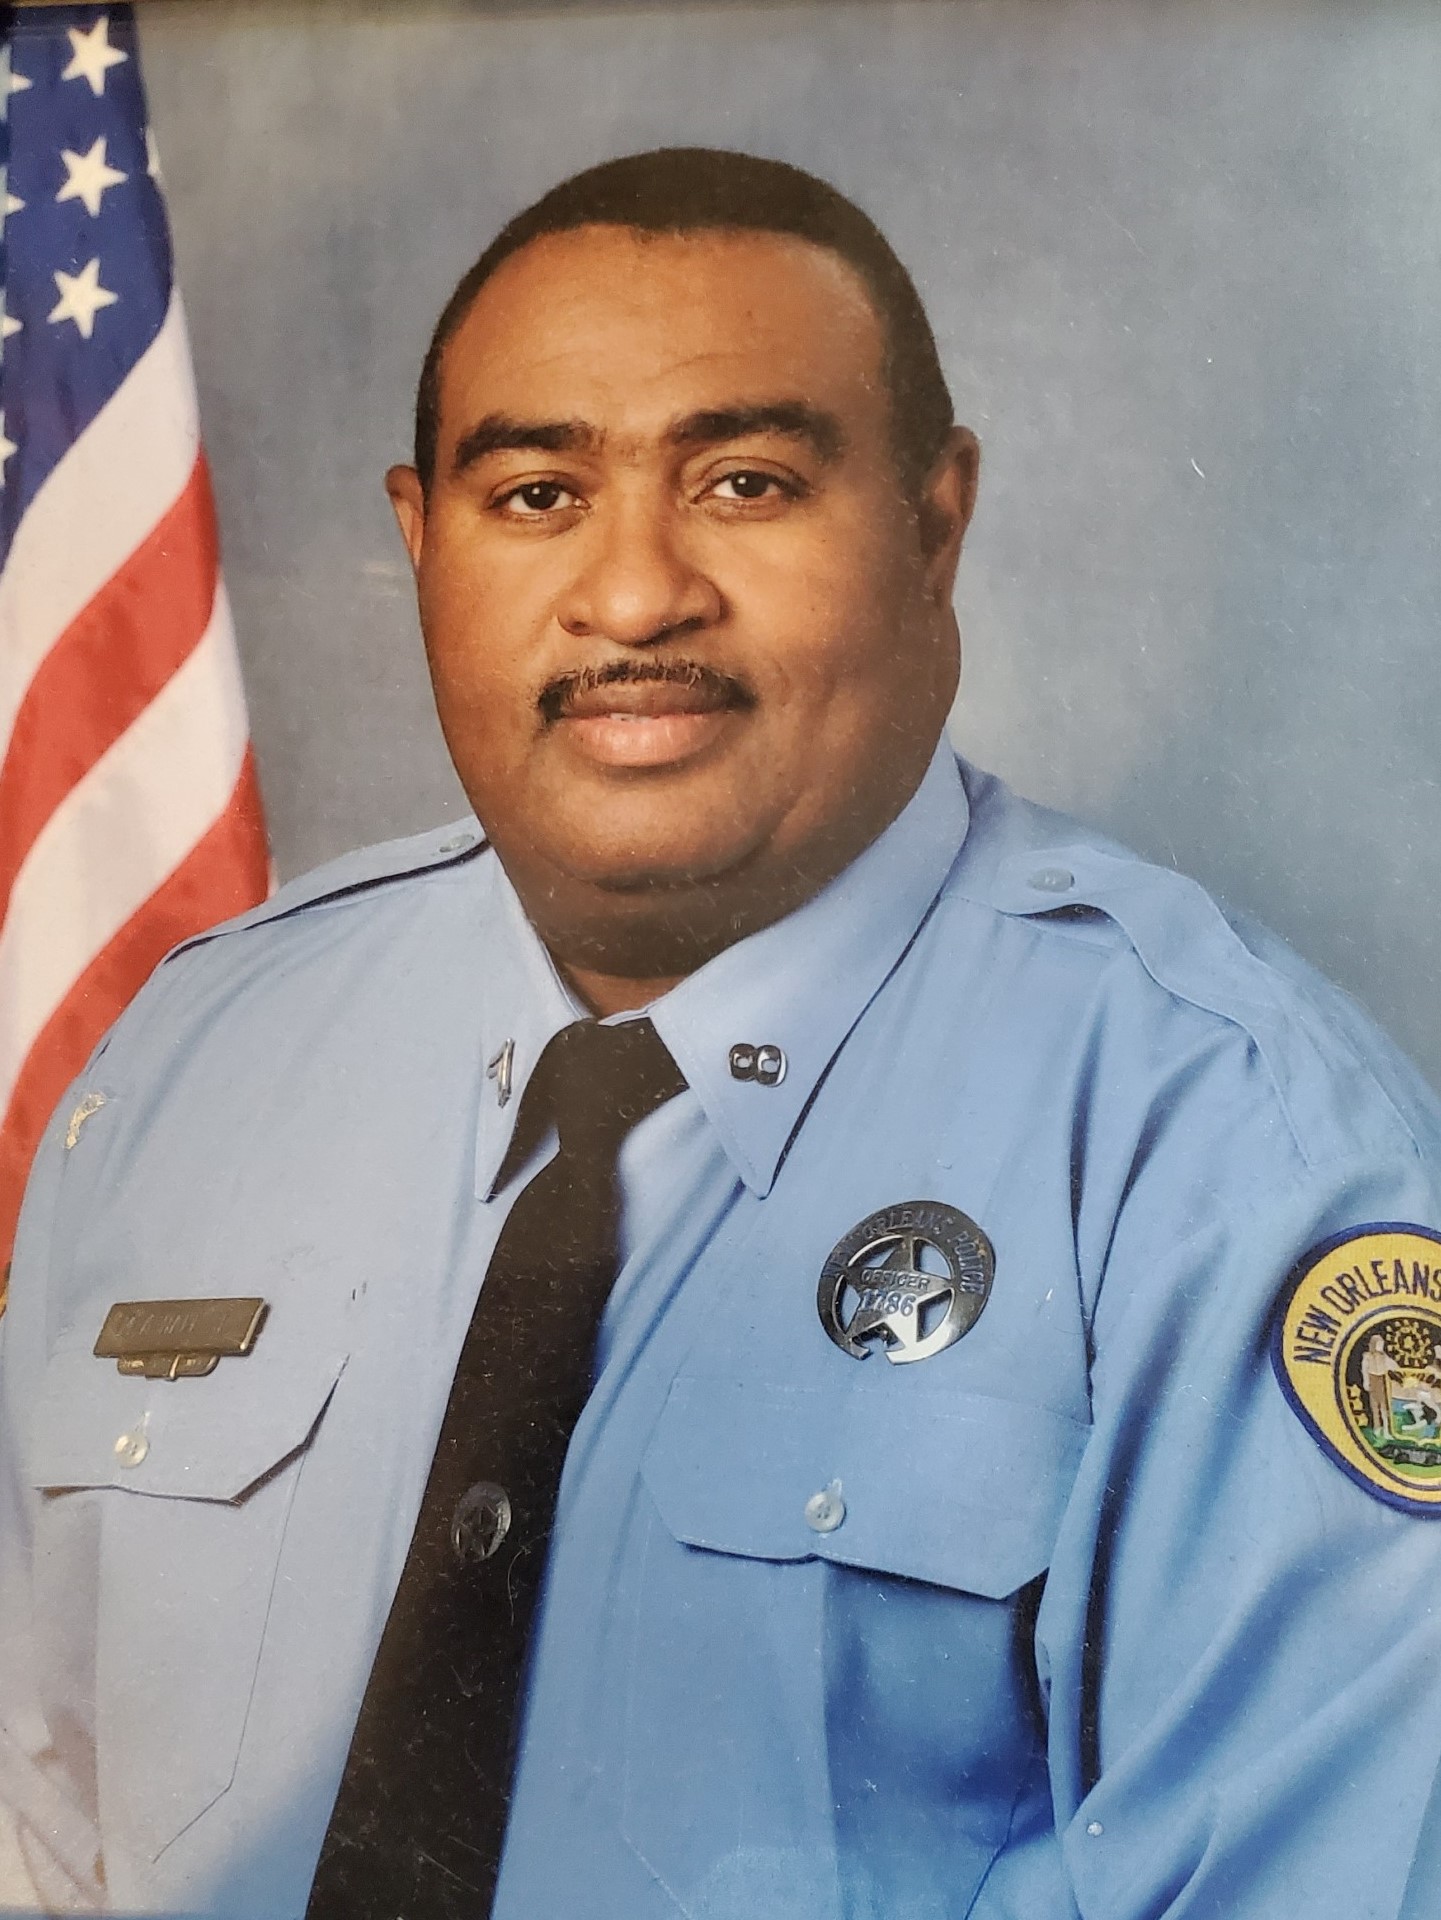 Senior Police Officer Mark Albert Hall, Sr. | New Orleans Police Department, Louisiana